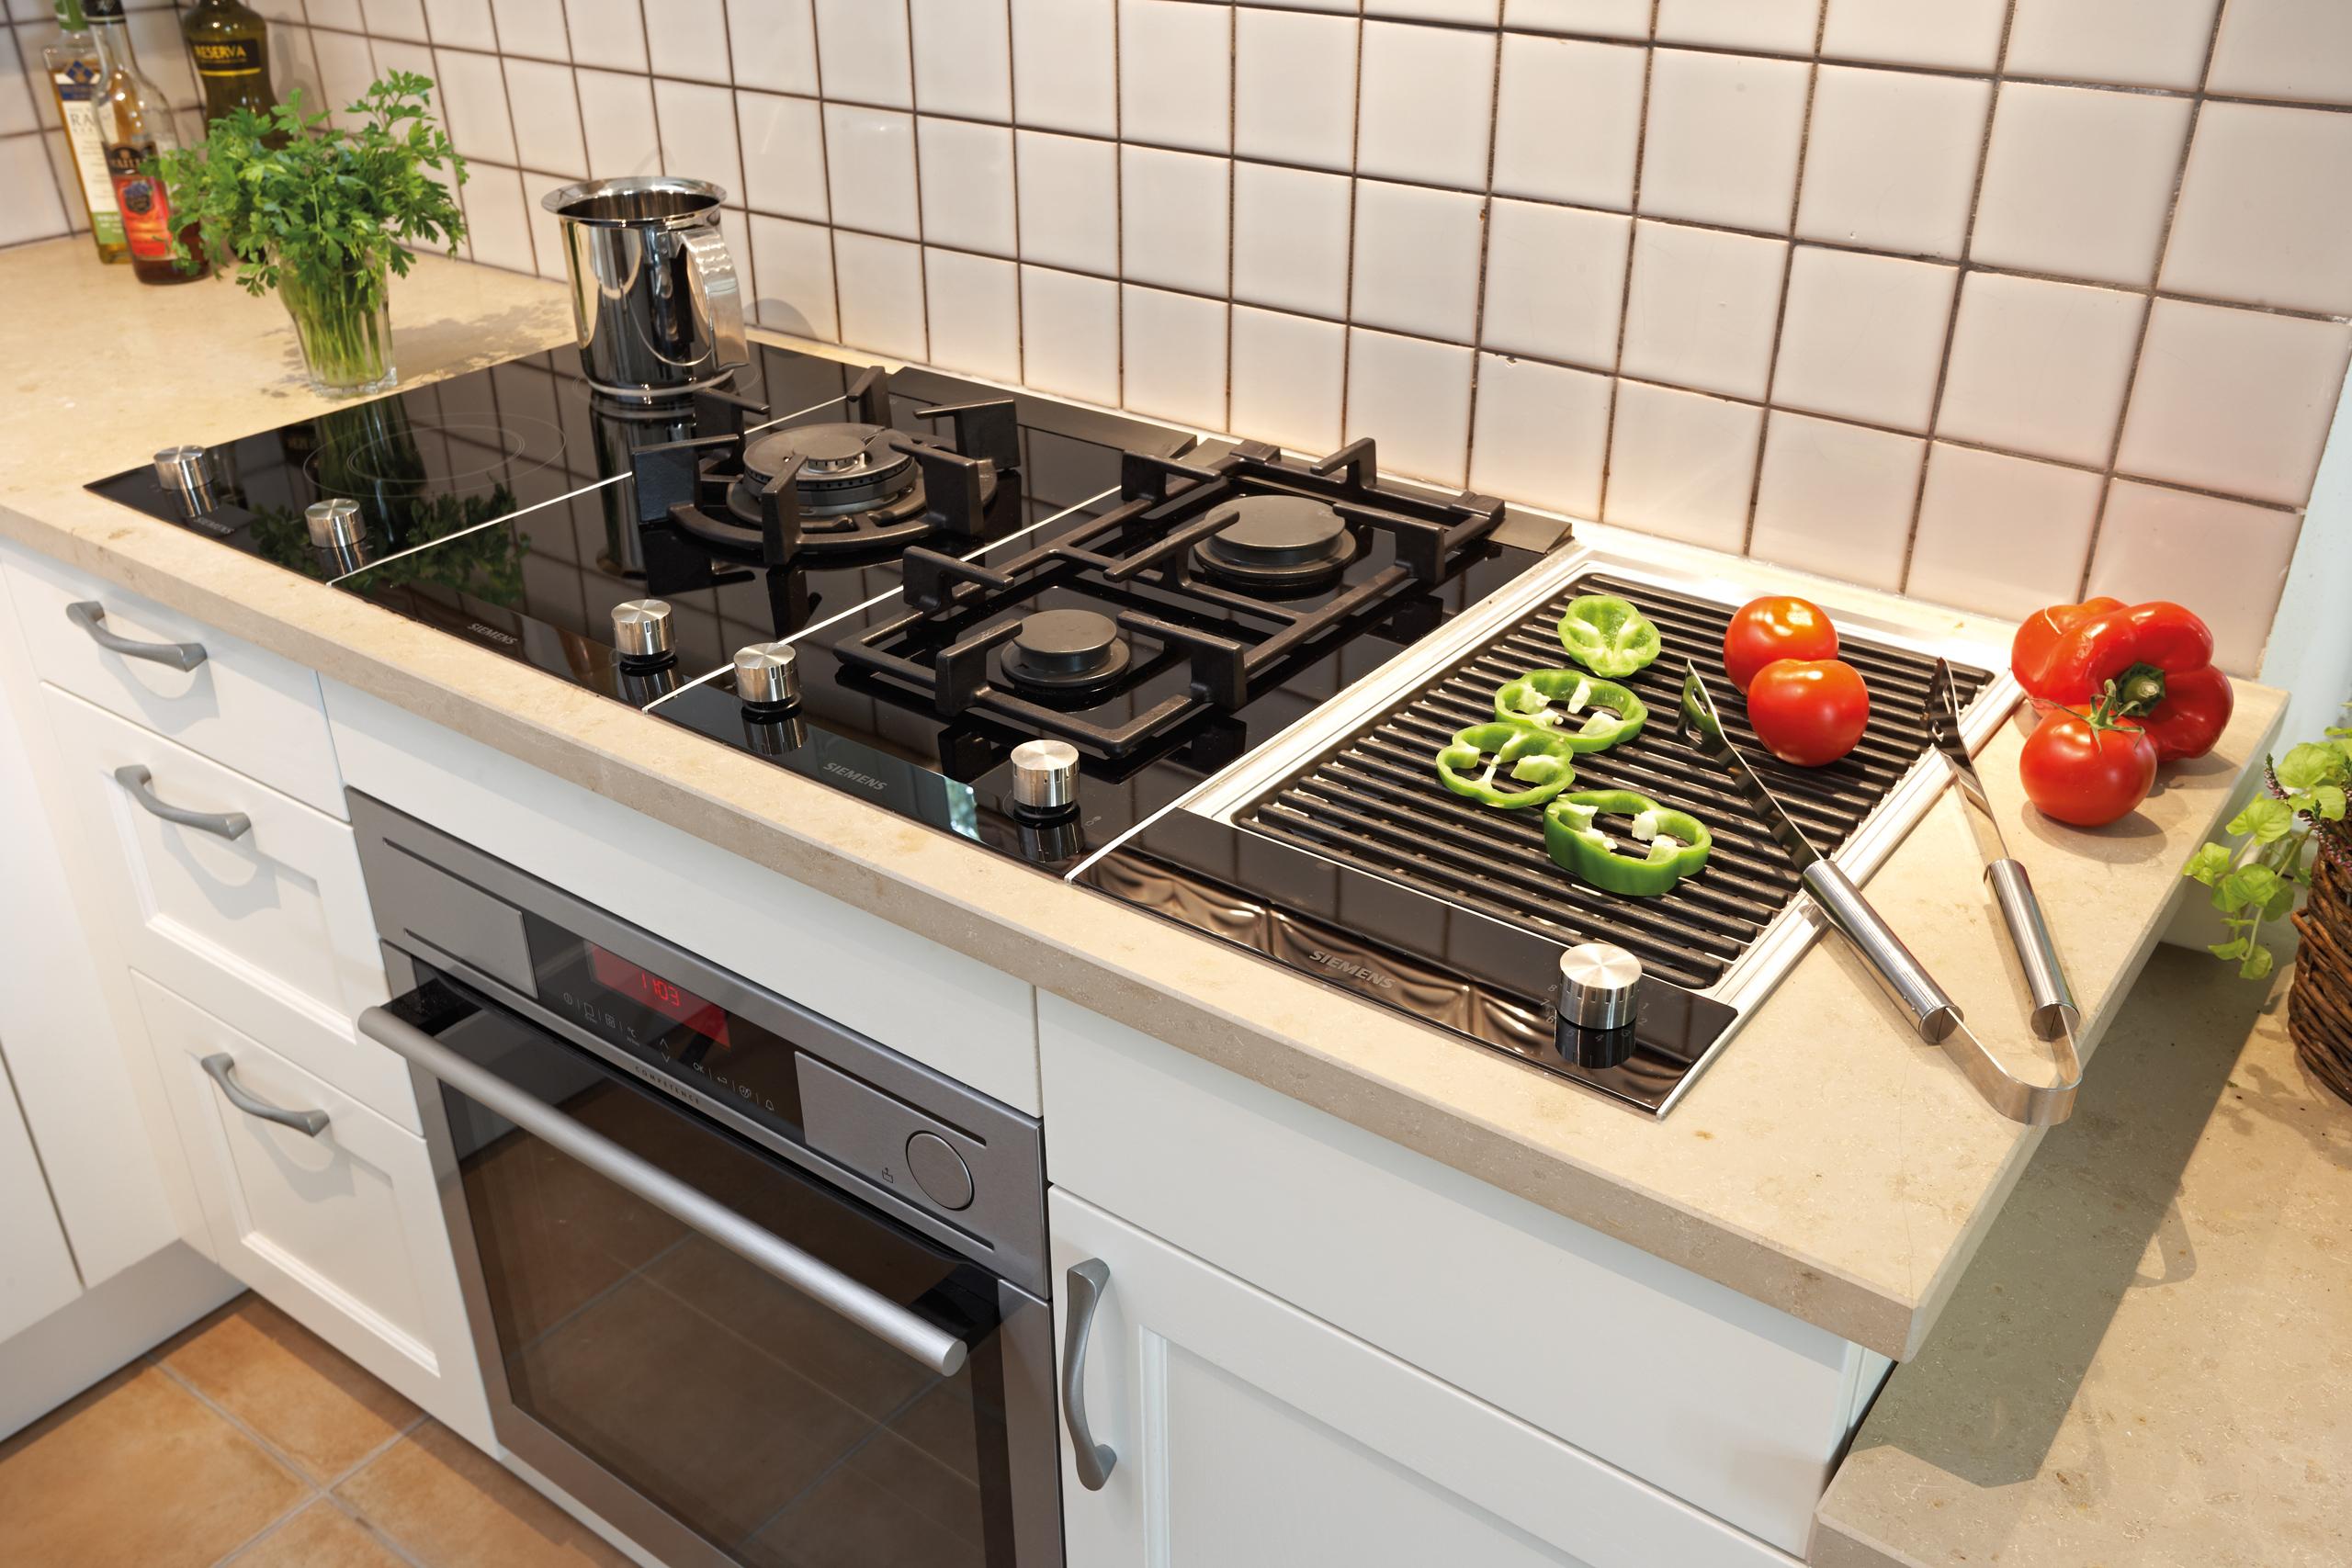 Siemens Domino-Kochstelle #küche #altbau #rustikal ©Küchen Quelle GmbH